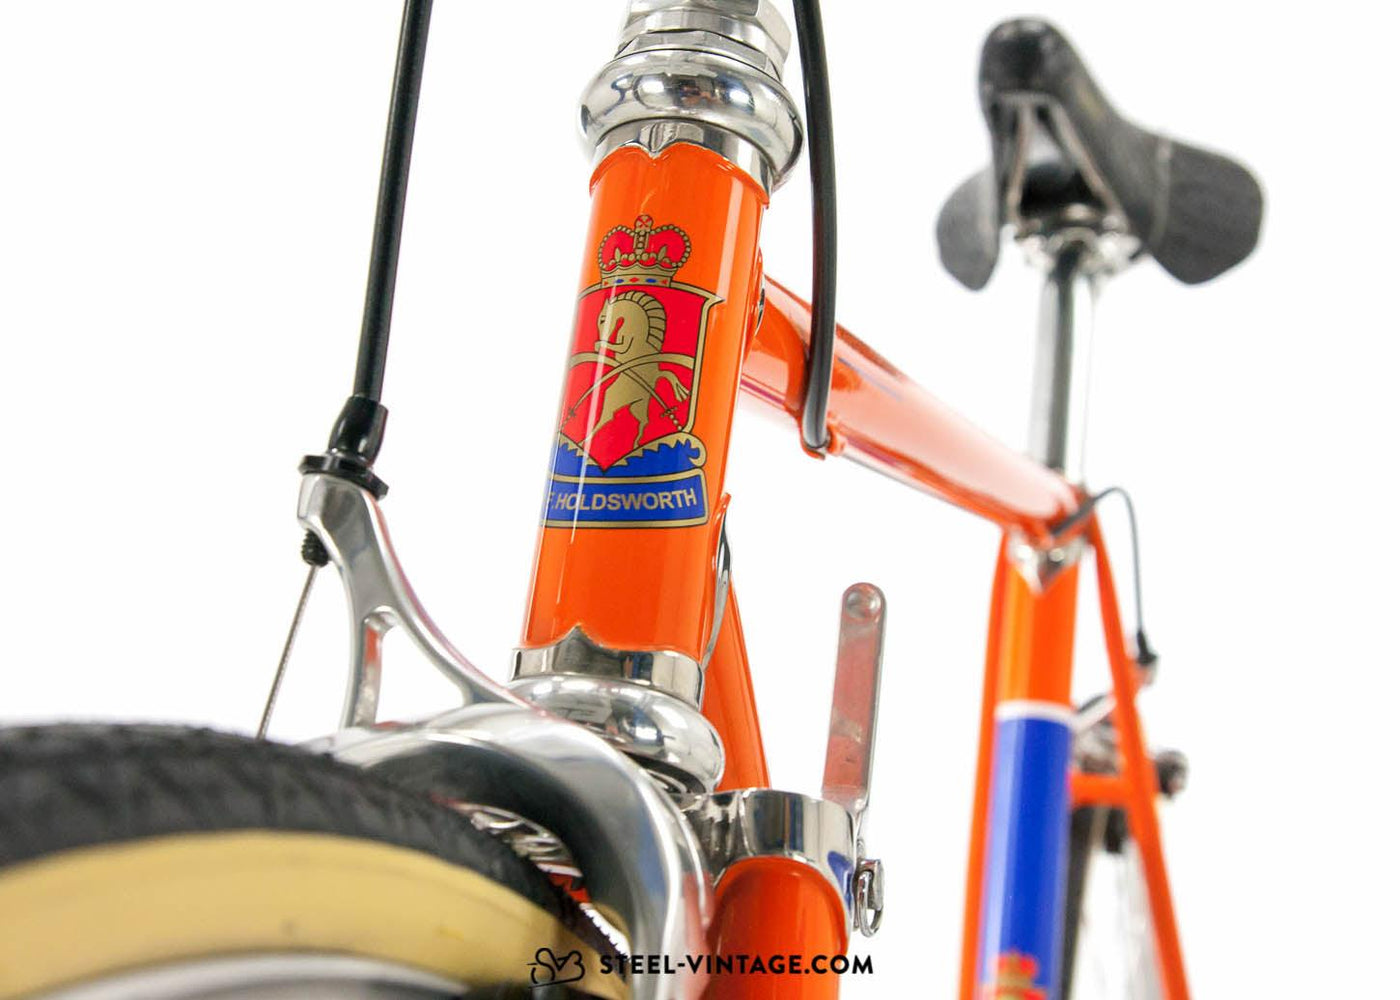 Holdsworth Professional Italia SL Eroica Show Bike - Steel Vintage Bikes